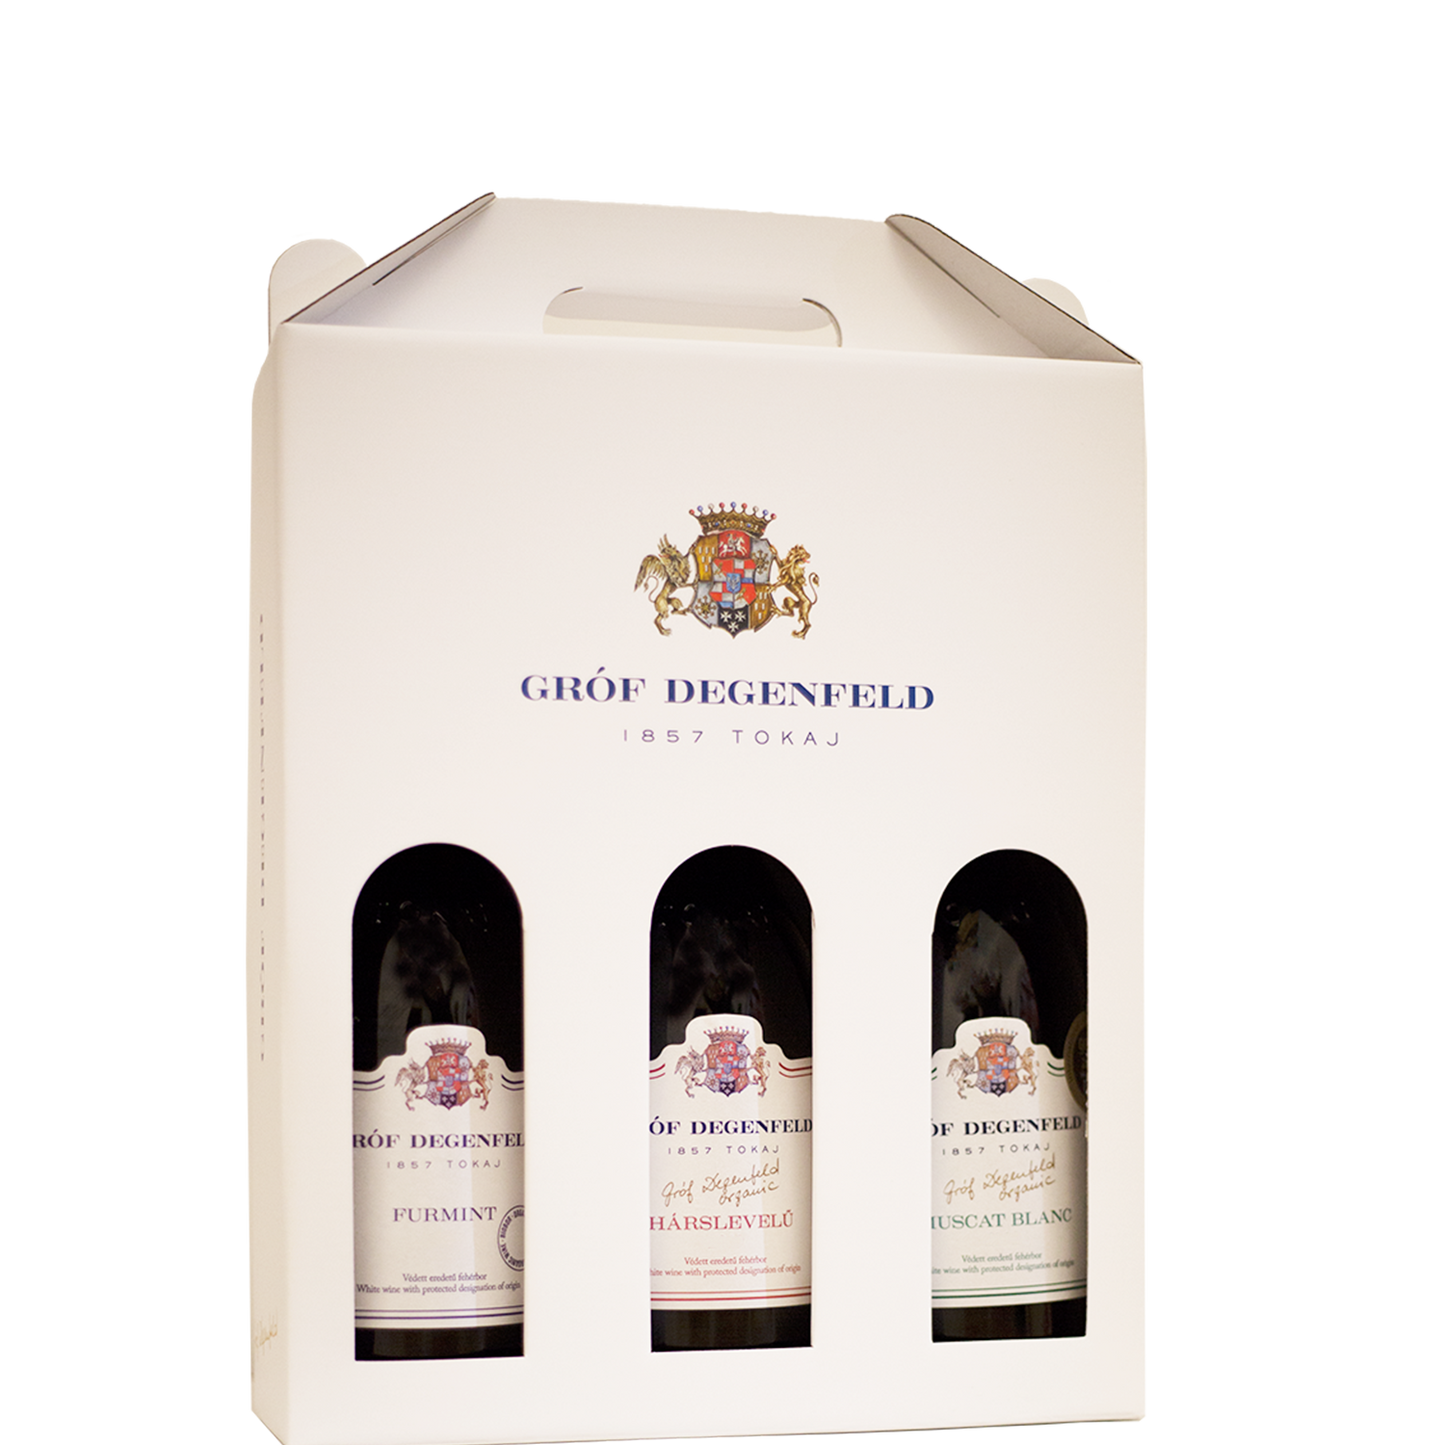 Gróf Degenfeld gift box for 0,5 l and 0,75 l bottles - for 3 bottles